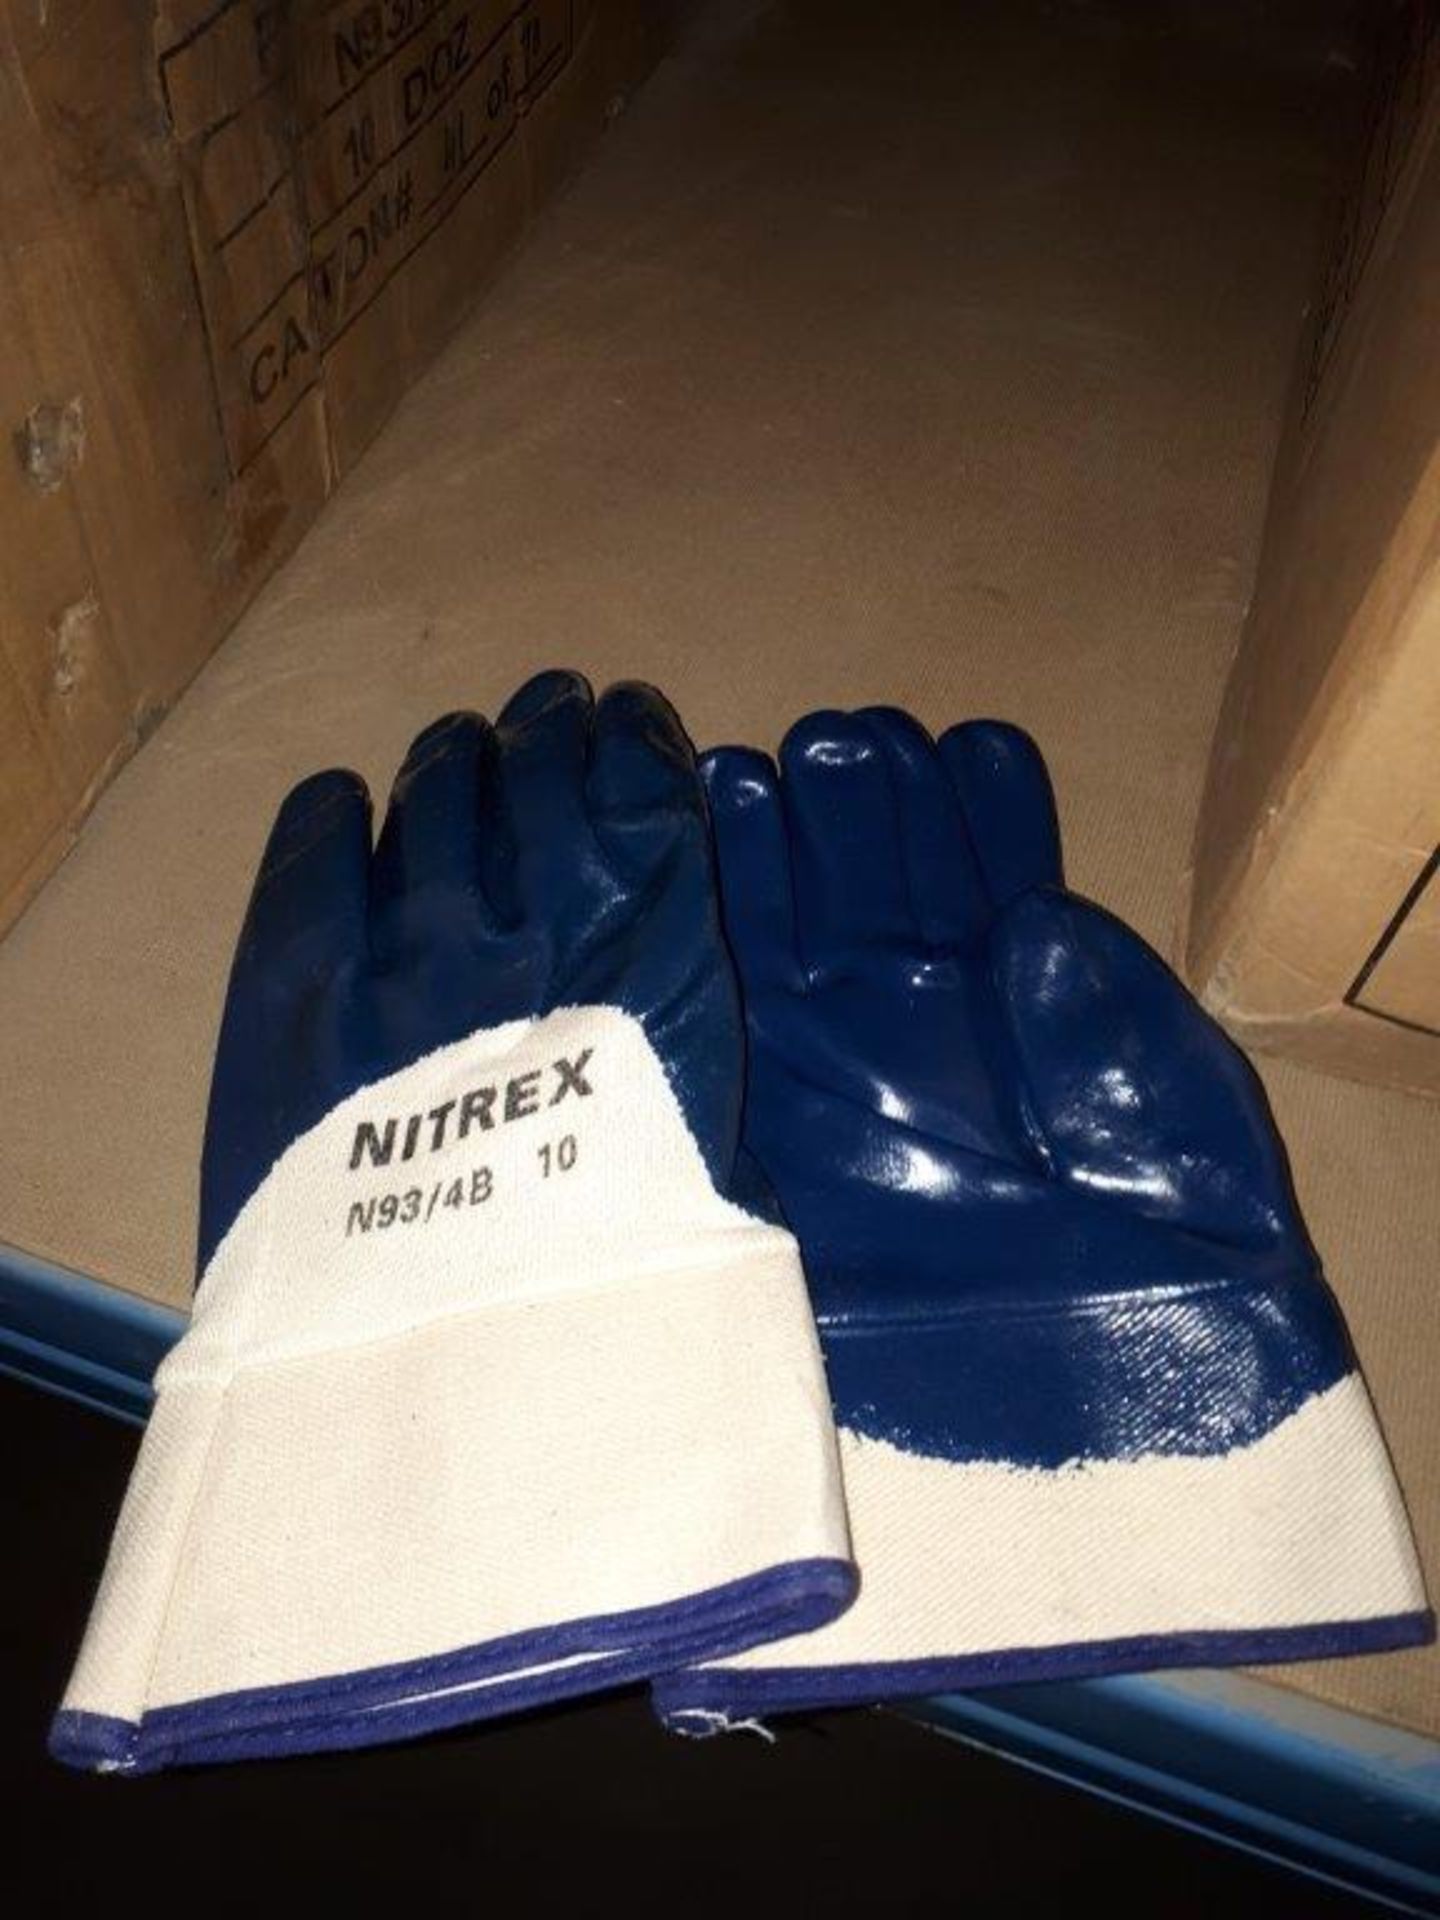 Work gloves (7 doz)